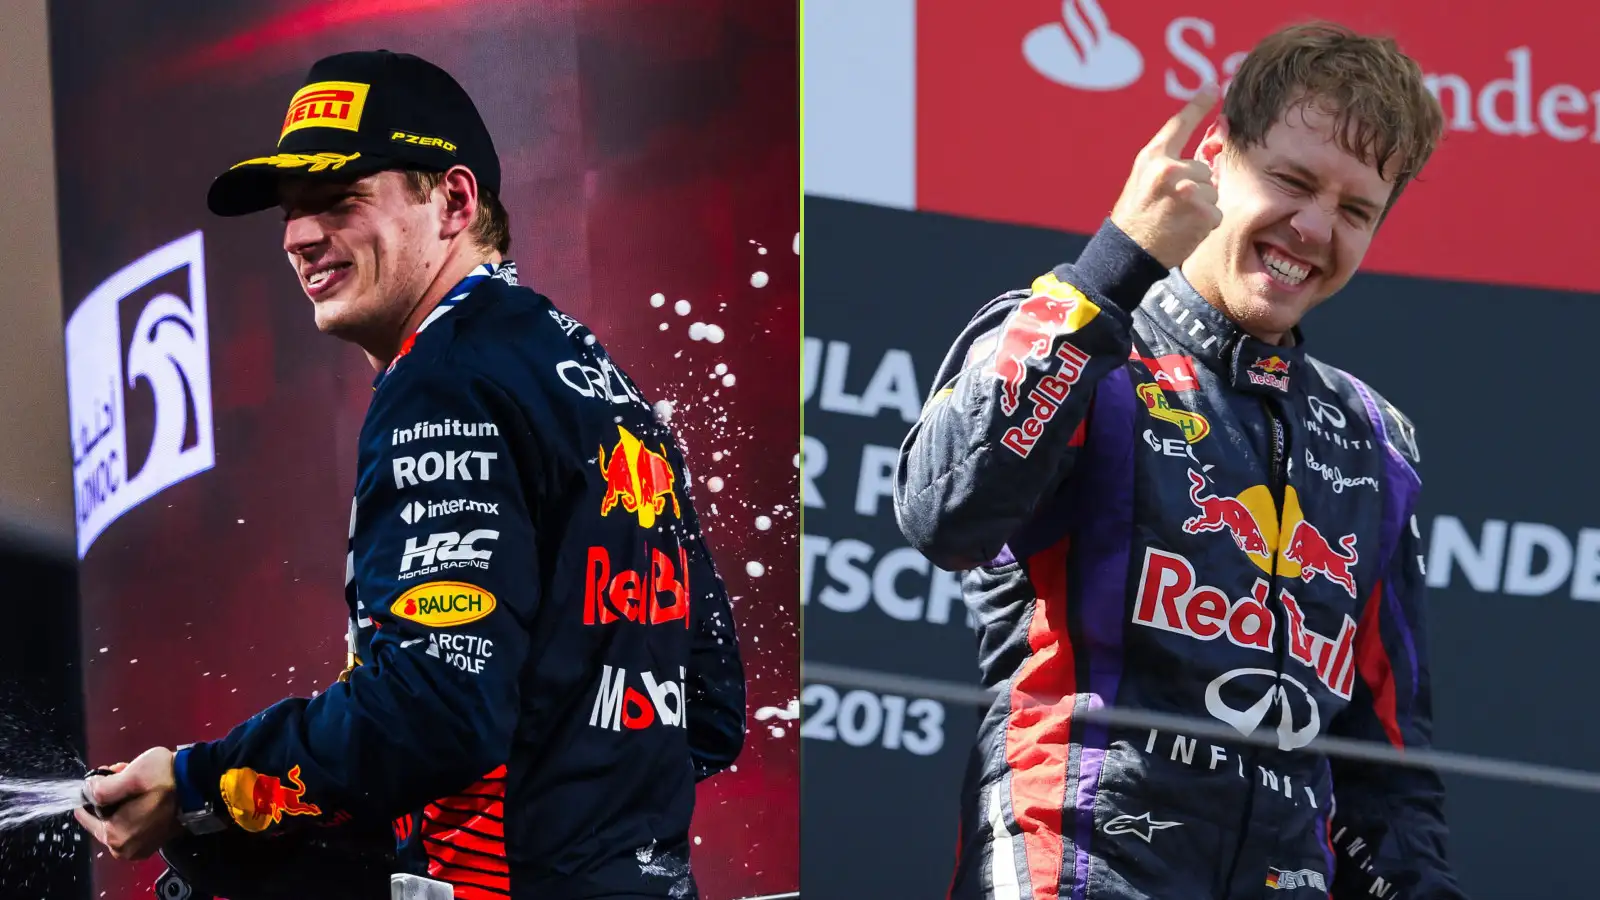 Red Bull World Champions Max Verstappen and Sebastian Vettel.